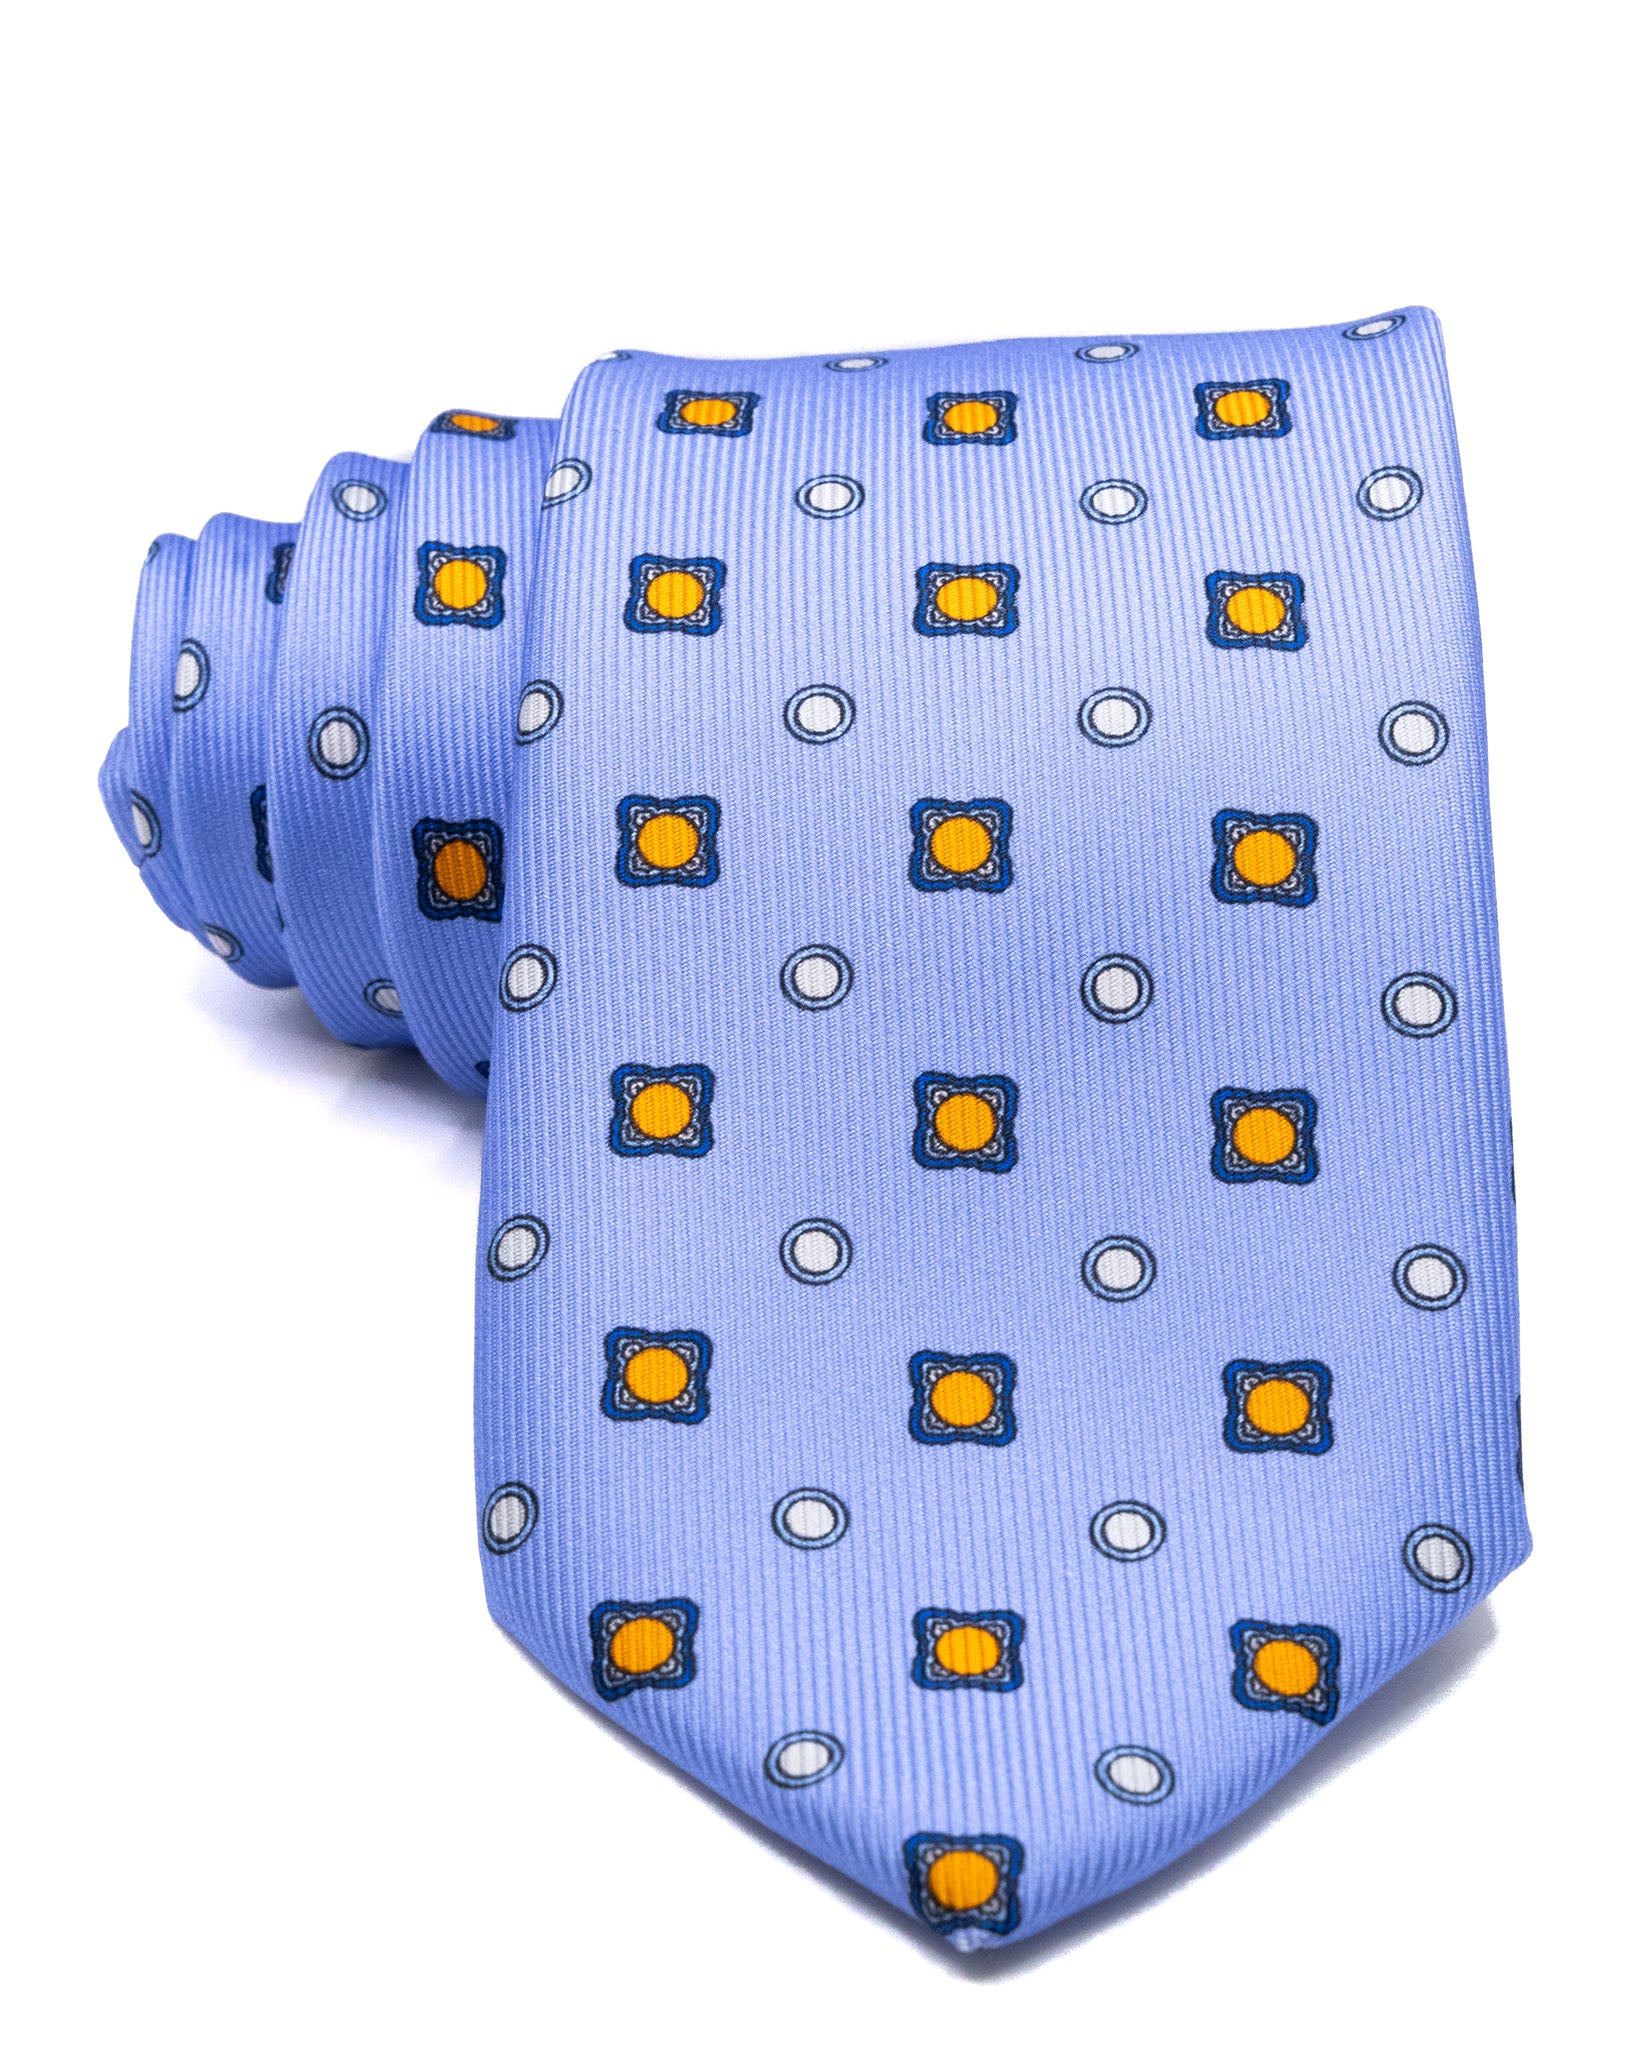 Cravatta - in seta twill azzurra a fantasia arancio